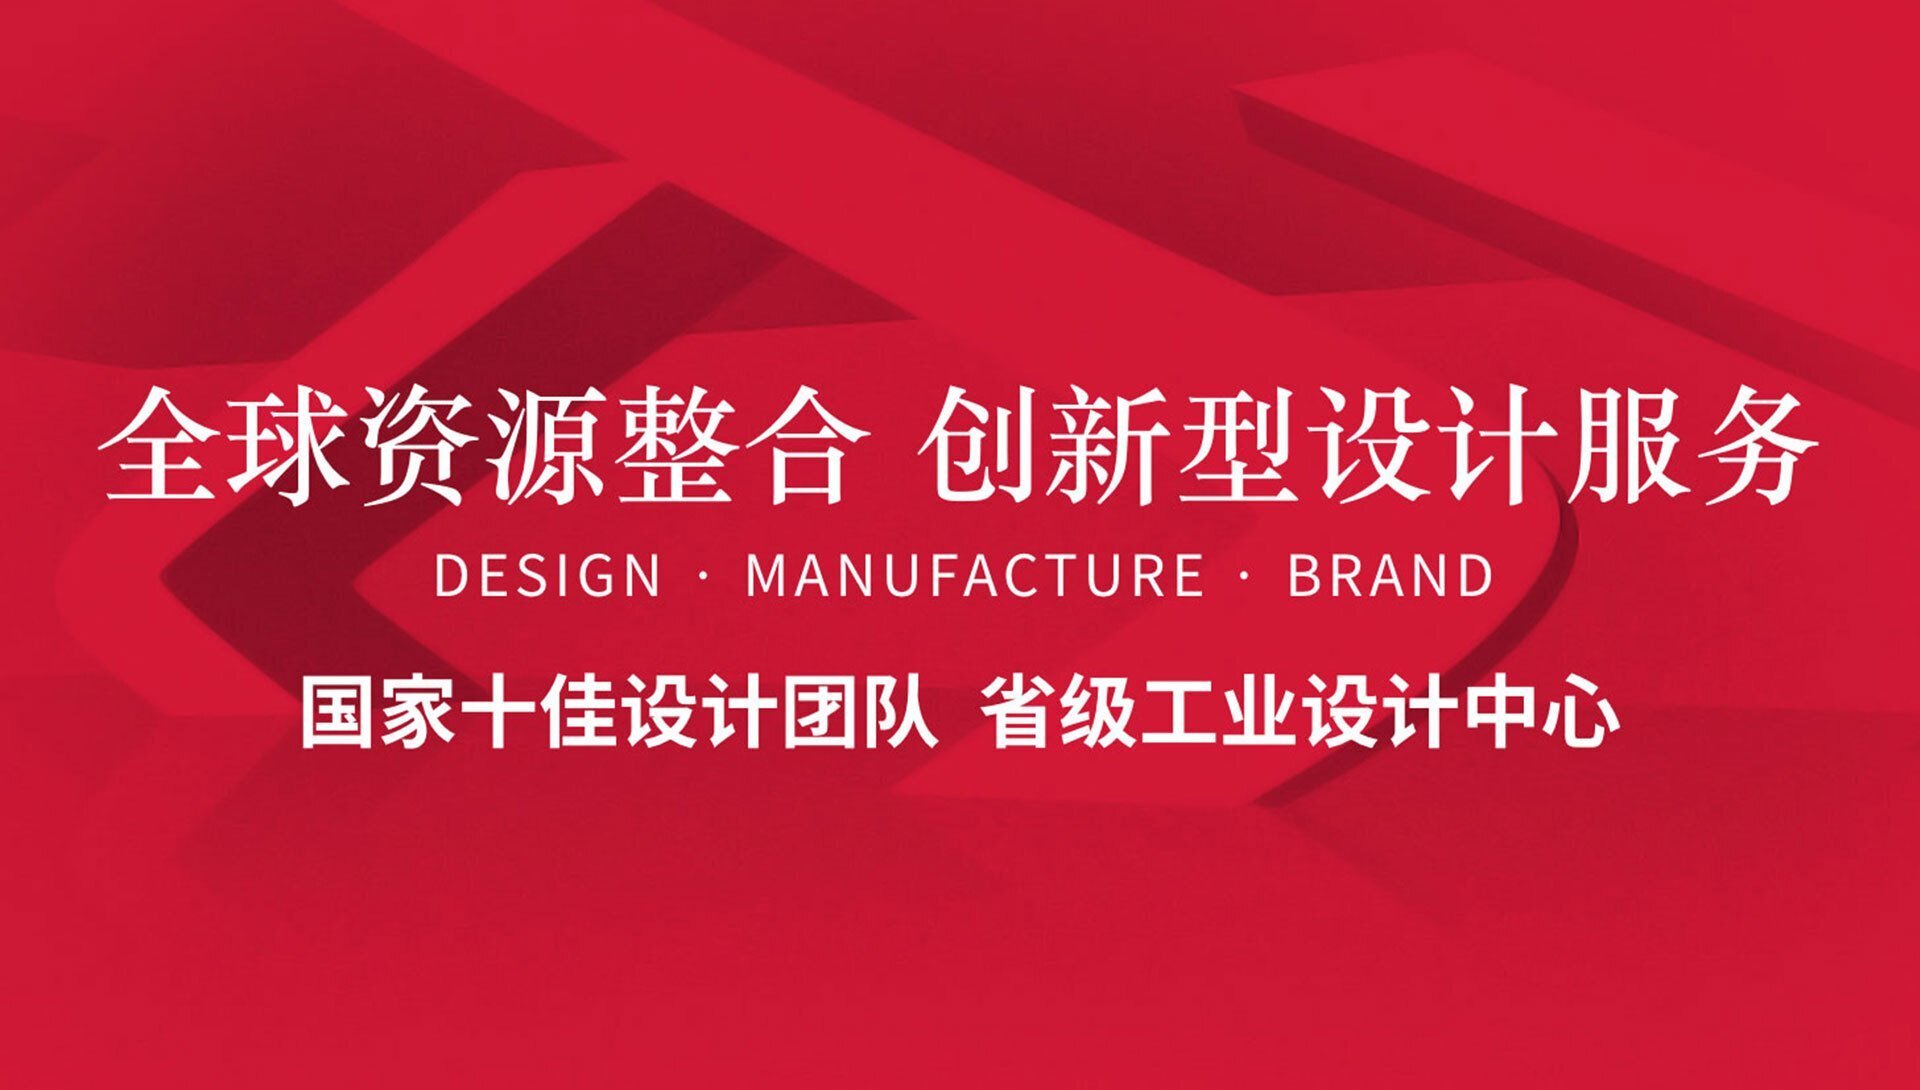 江苏创品工业设计公司使命-振兴江苏工业设计助力企业产品升级